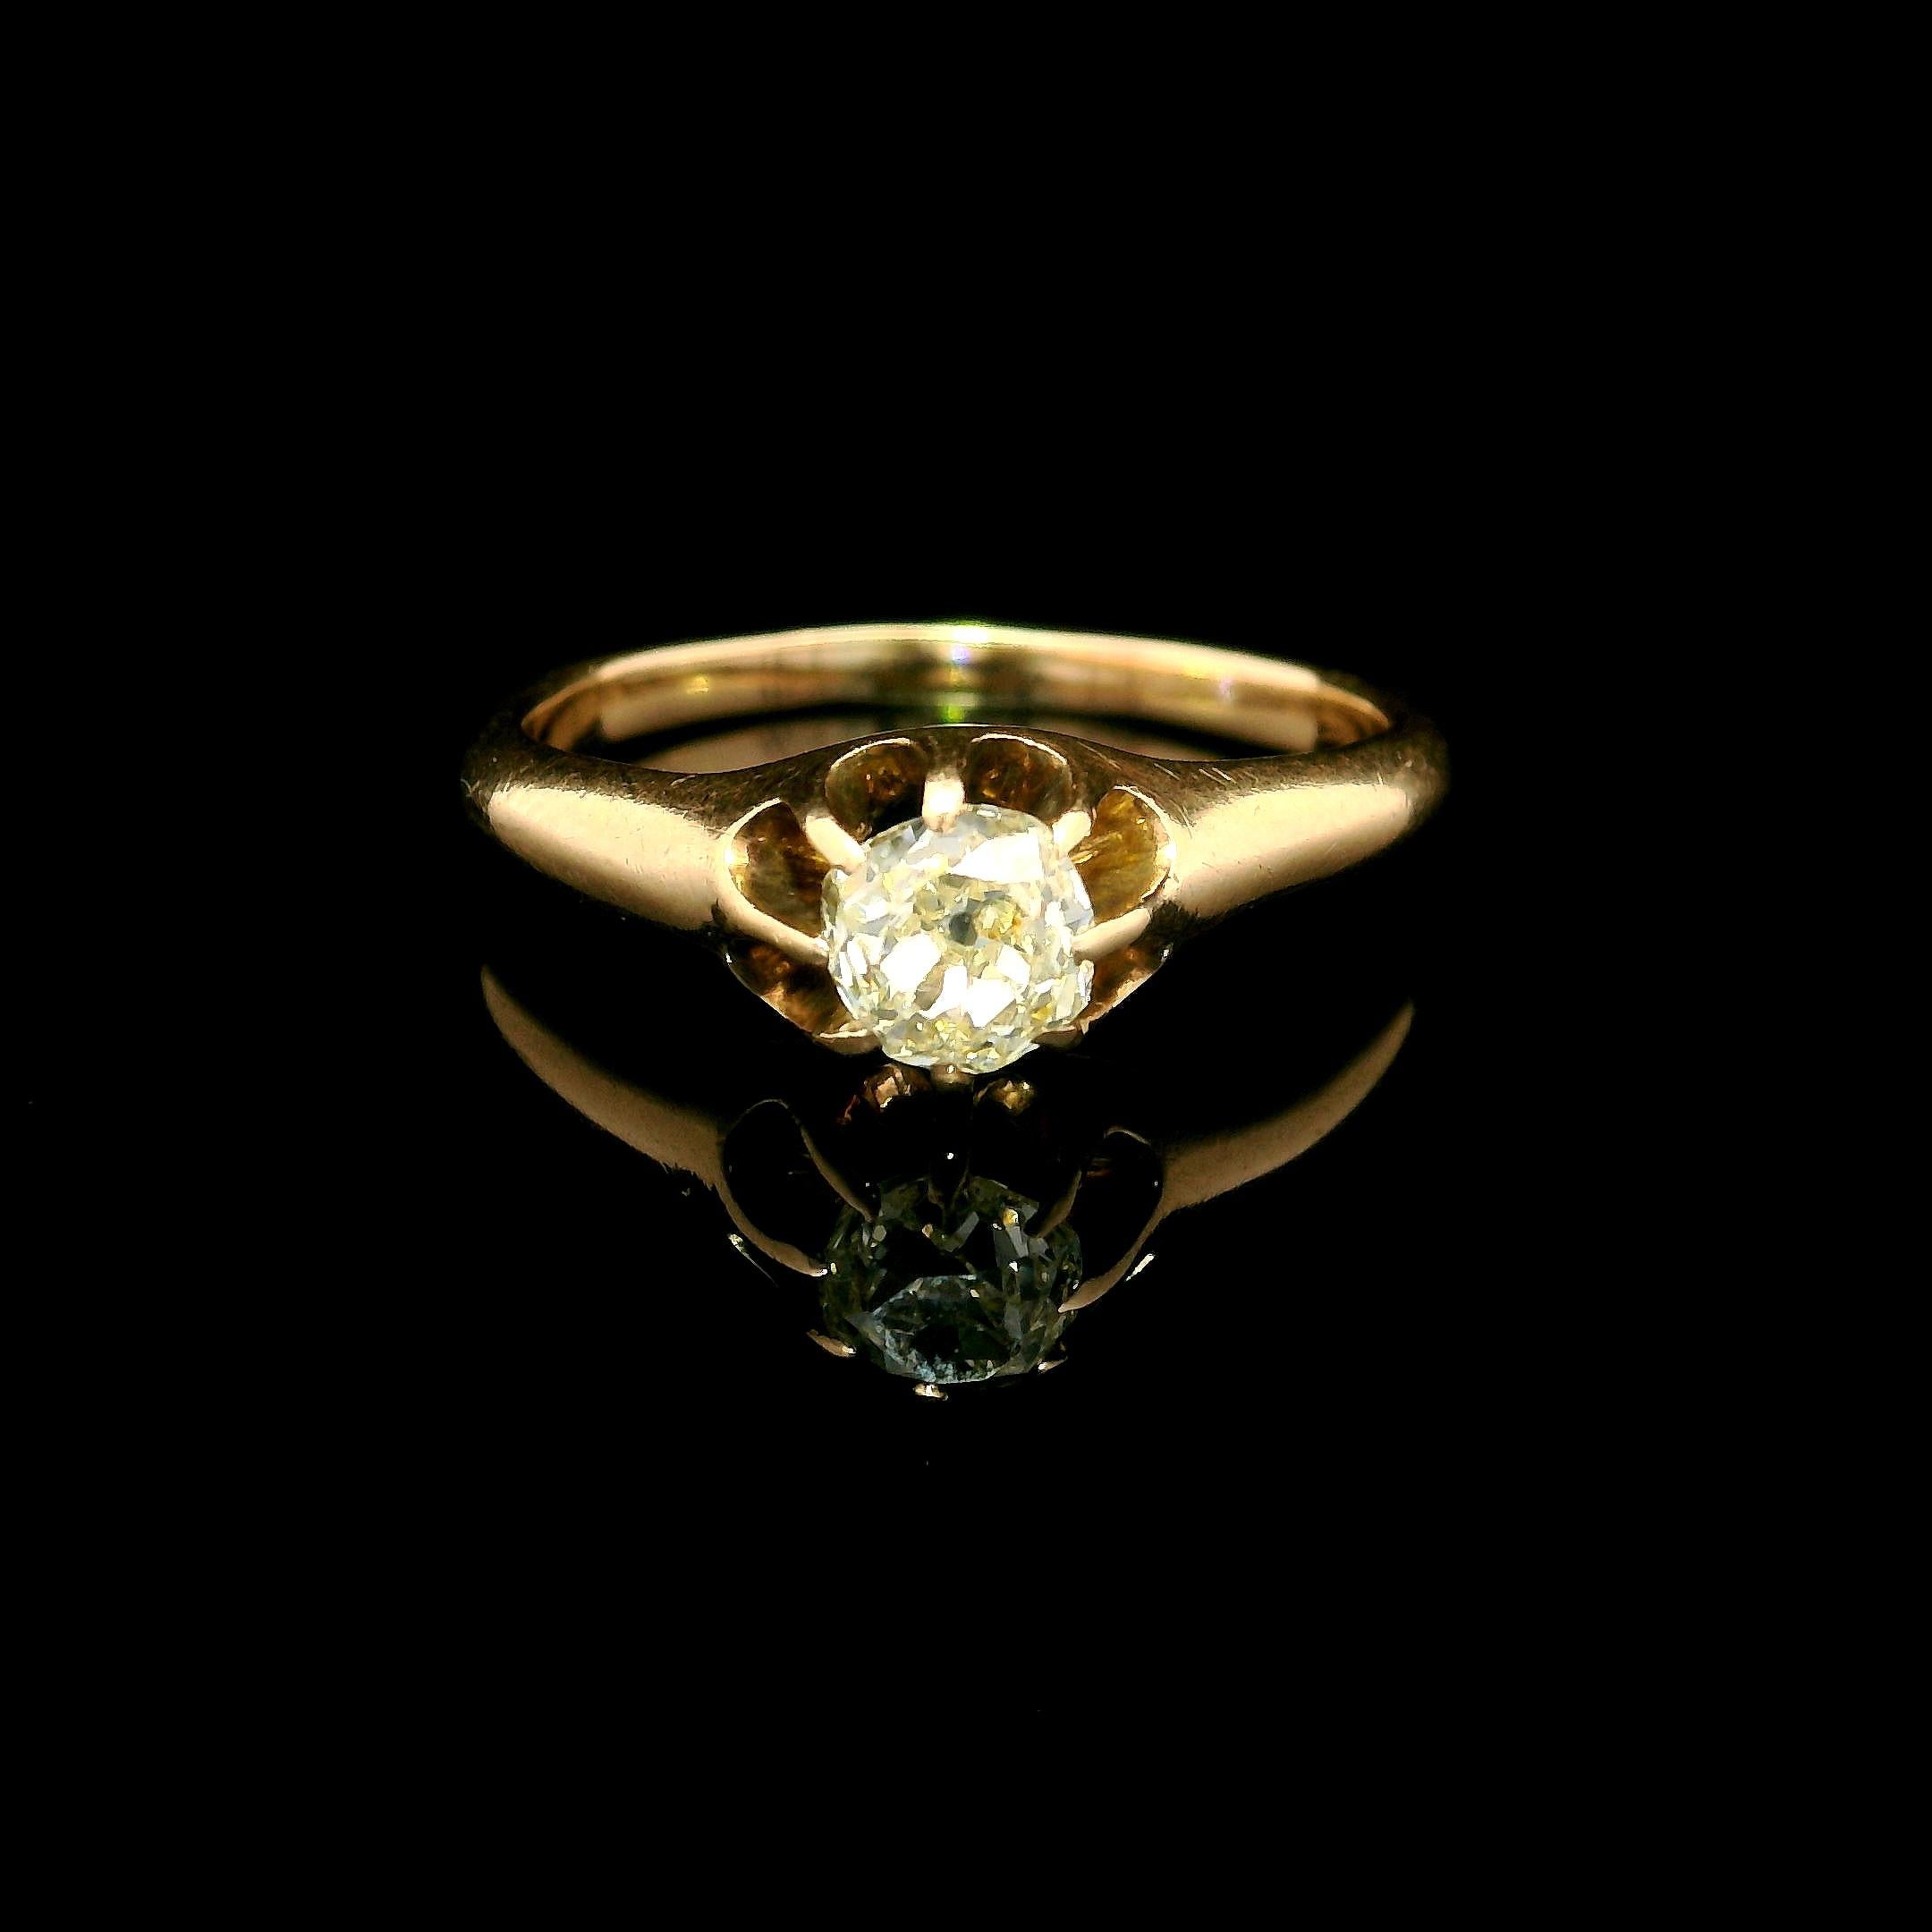 -Pierre(s)
(1) Diamant naturel véritable - taille ancienne - serti clos - couleur jaune chaud ardent  - Clarté VS1 - 0,52ctw (approx.)
MATERIAL : Or jaune 10k massif
Poids : 2,73 grammes
Taille de la bague : 7.0 (ajustée au doigt, veuillez nous